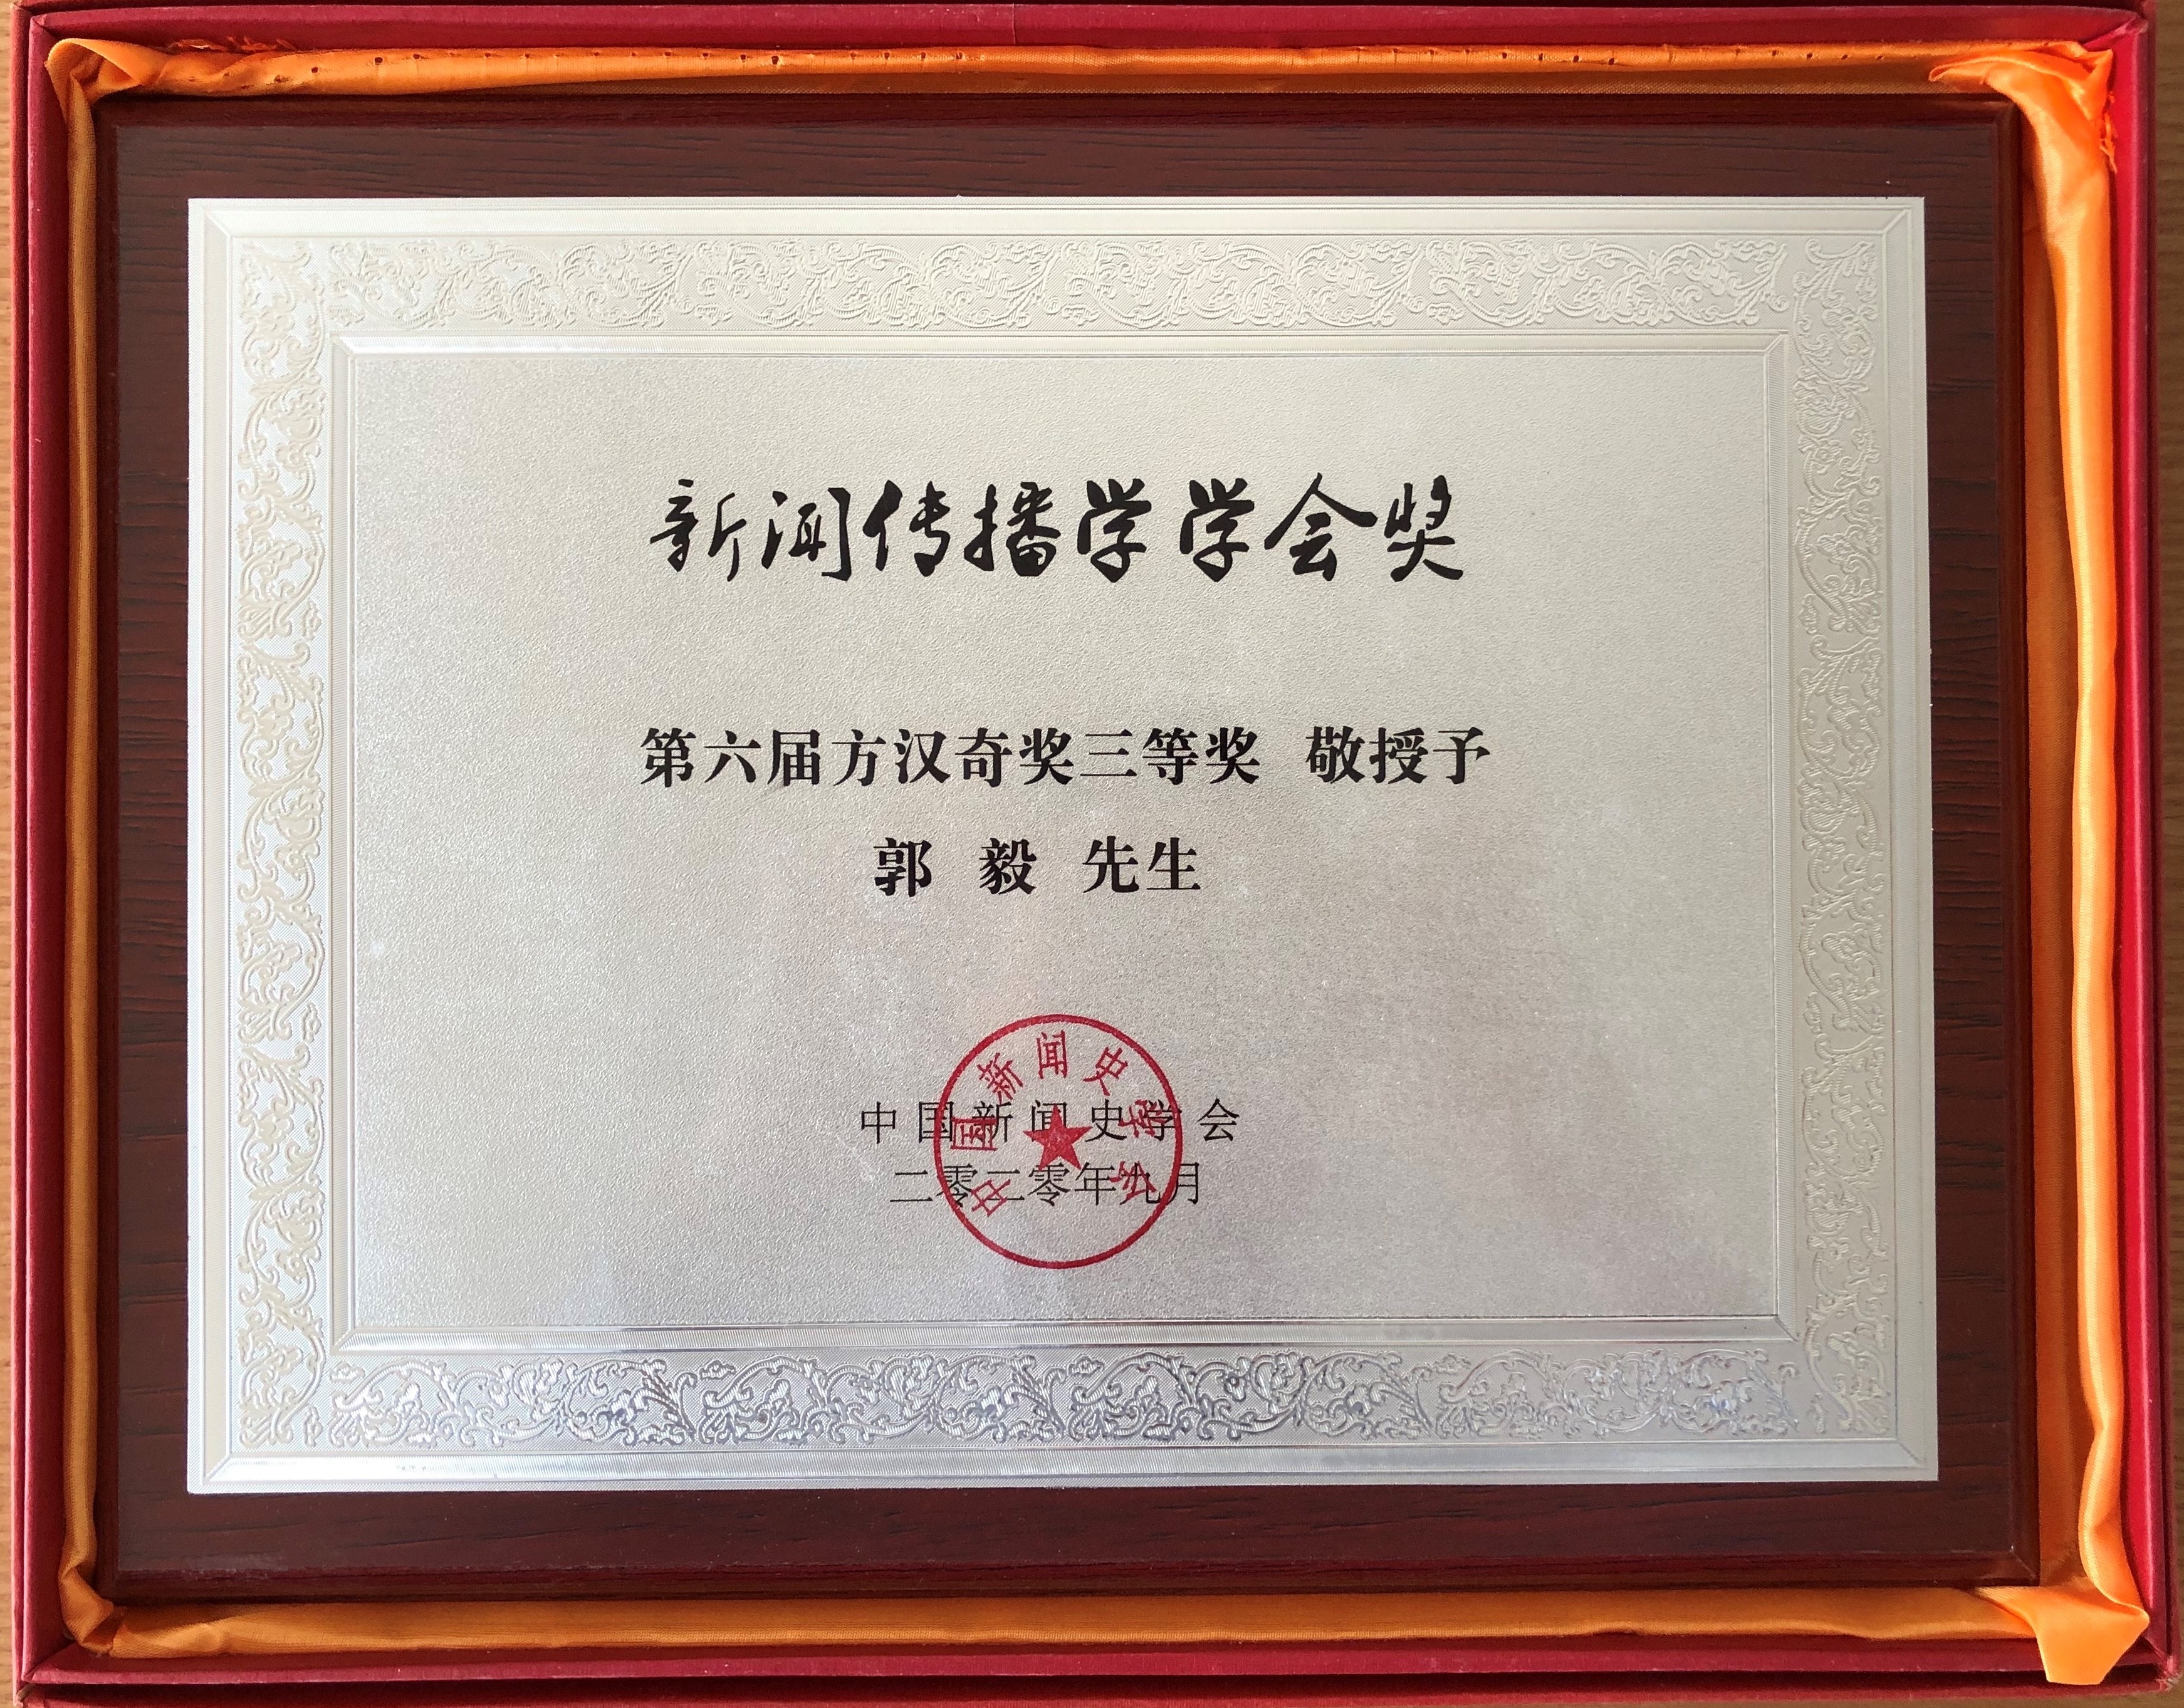 2020 Chinese Journalism and Mass Communication Association Award